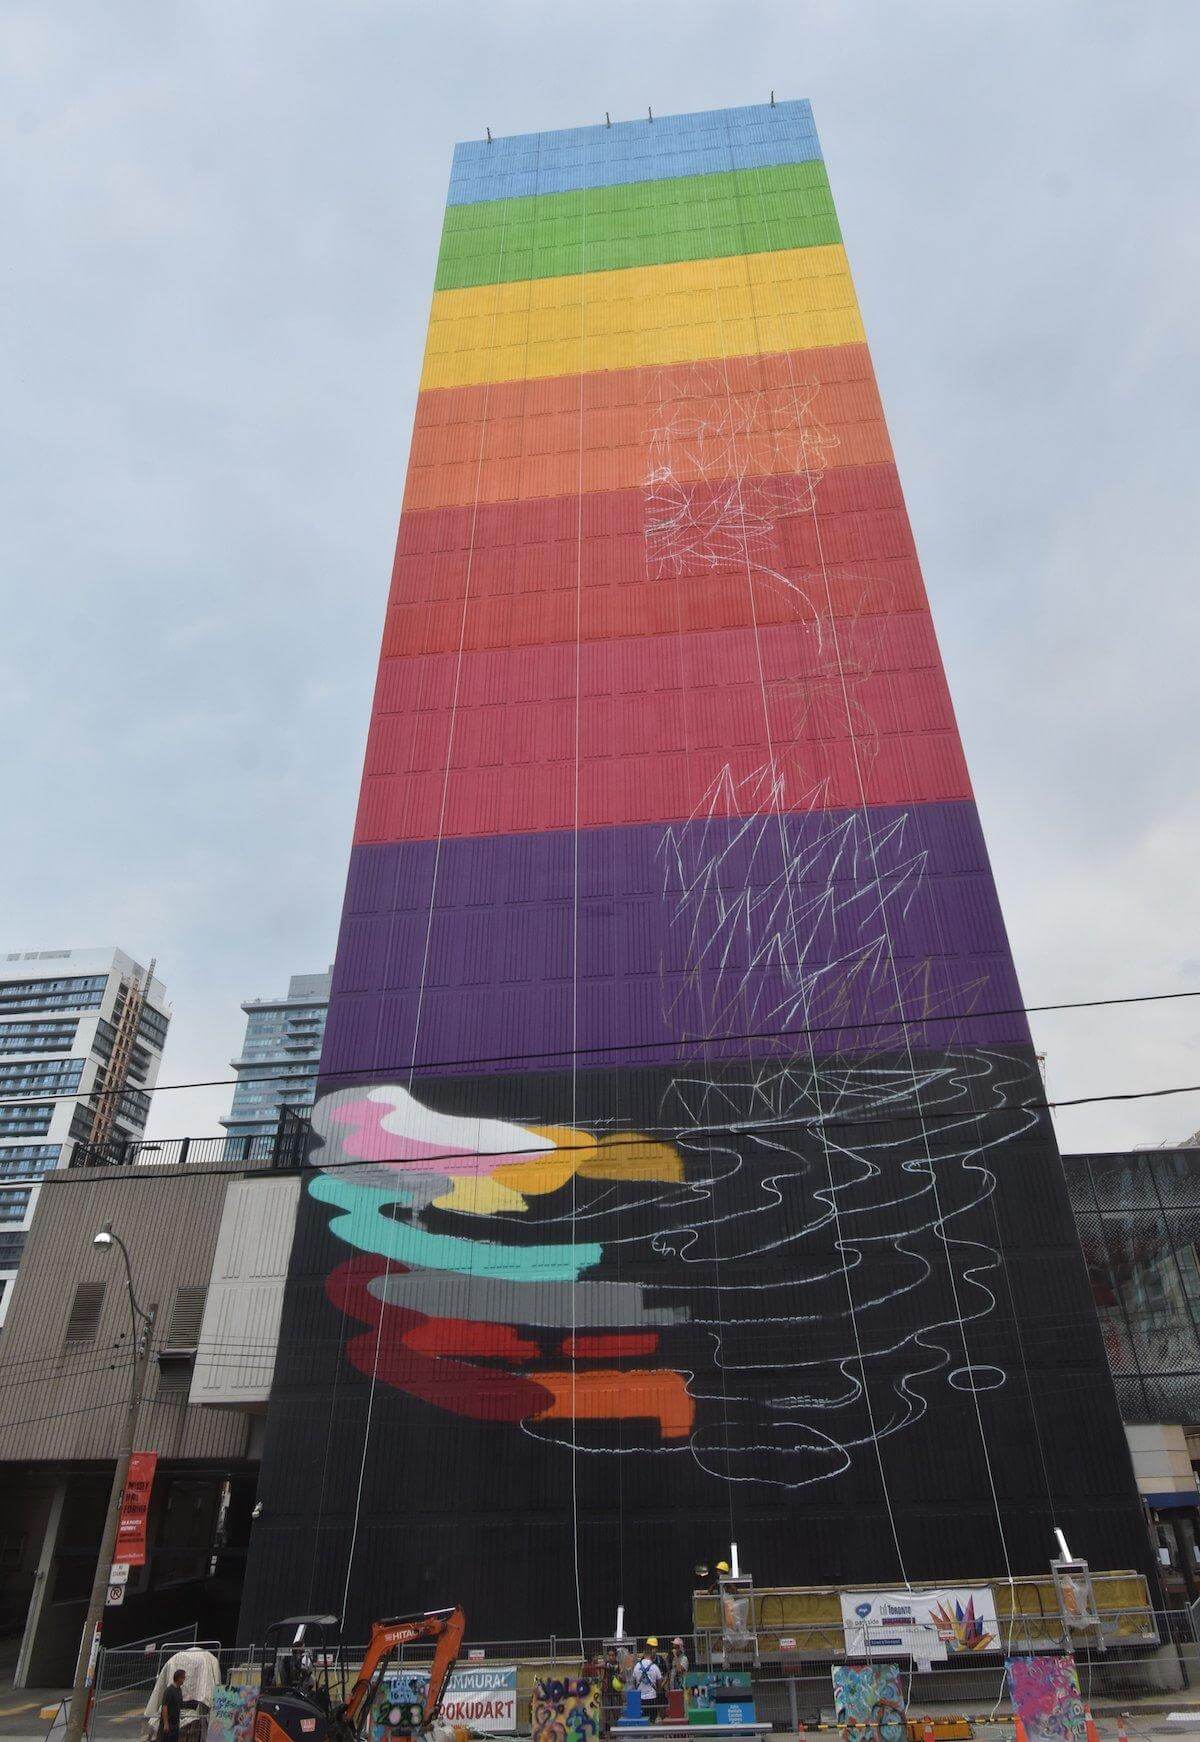 Okuda San Miguel, crea un gigantesco mural en Toronto en celebración a la diversidad, la naturaleza y el conocimiento, en Parkside Student Residence.